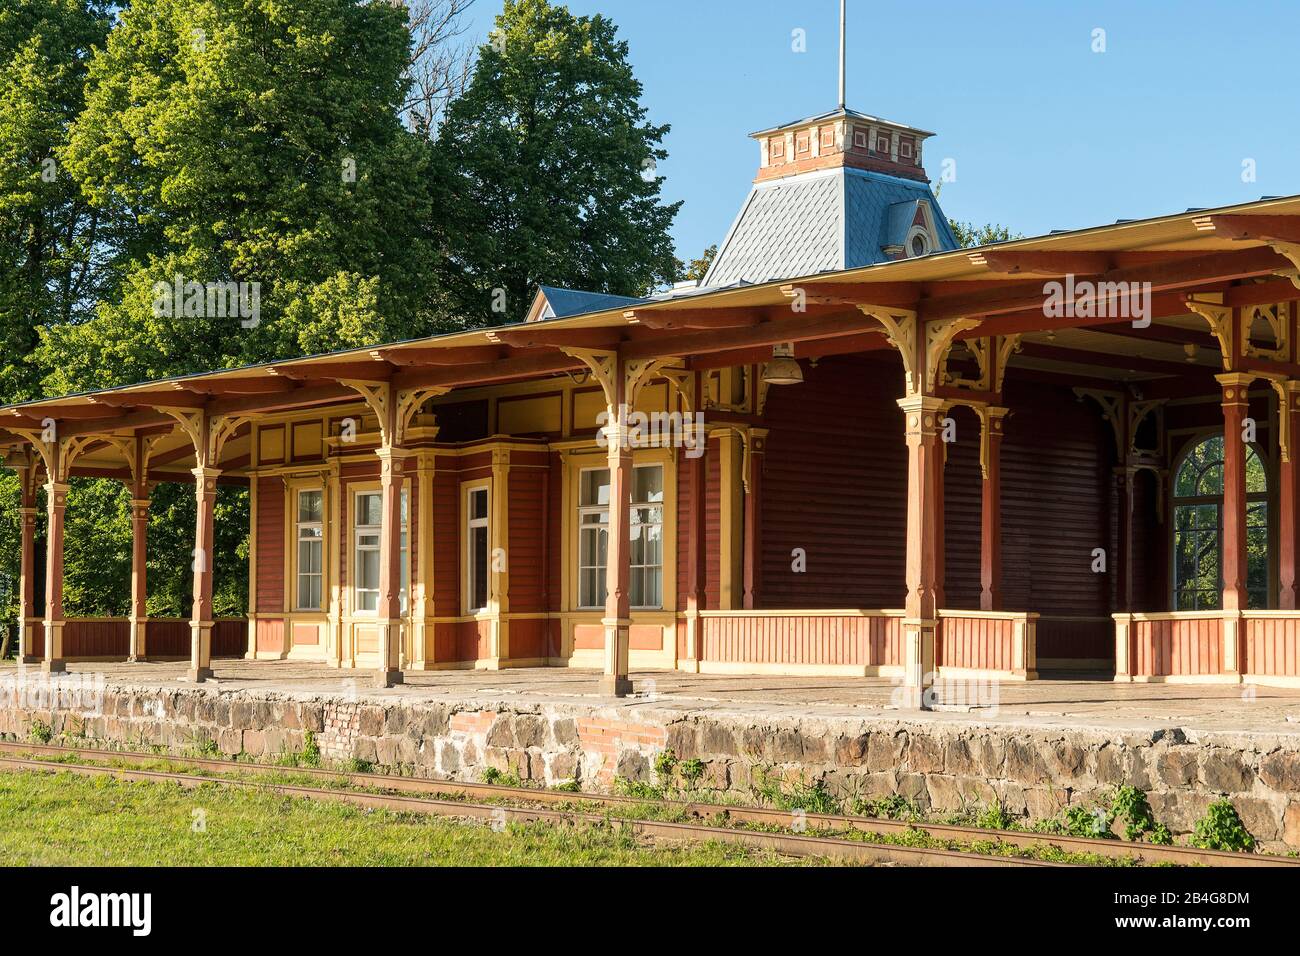 Estland, Westküste, Haapsalu, Historischer Bahnhof, Bahnhofsgebäude Banque D'Images